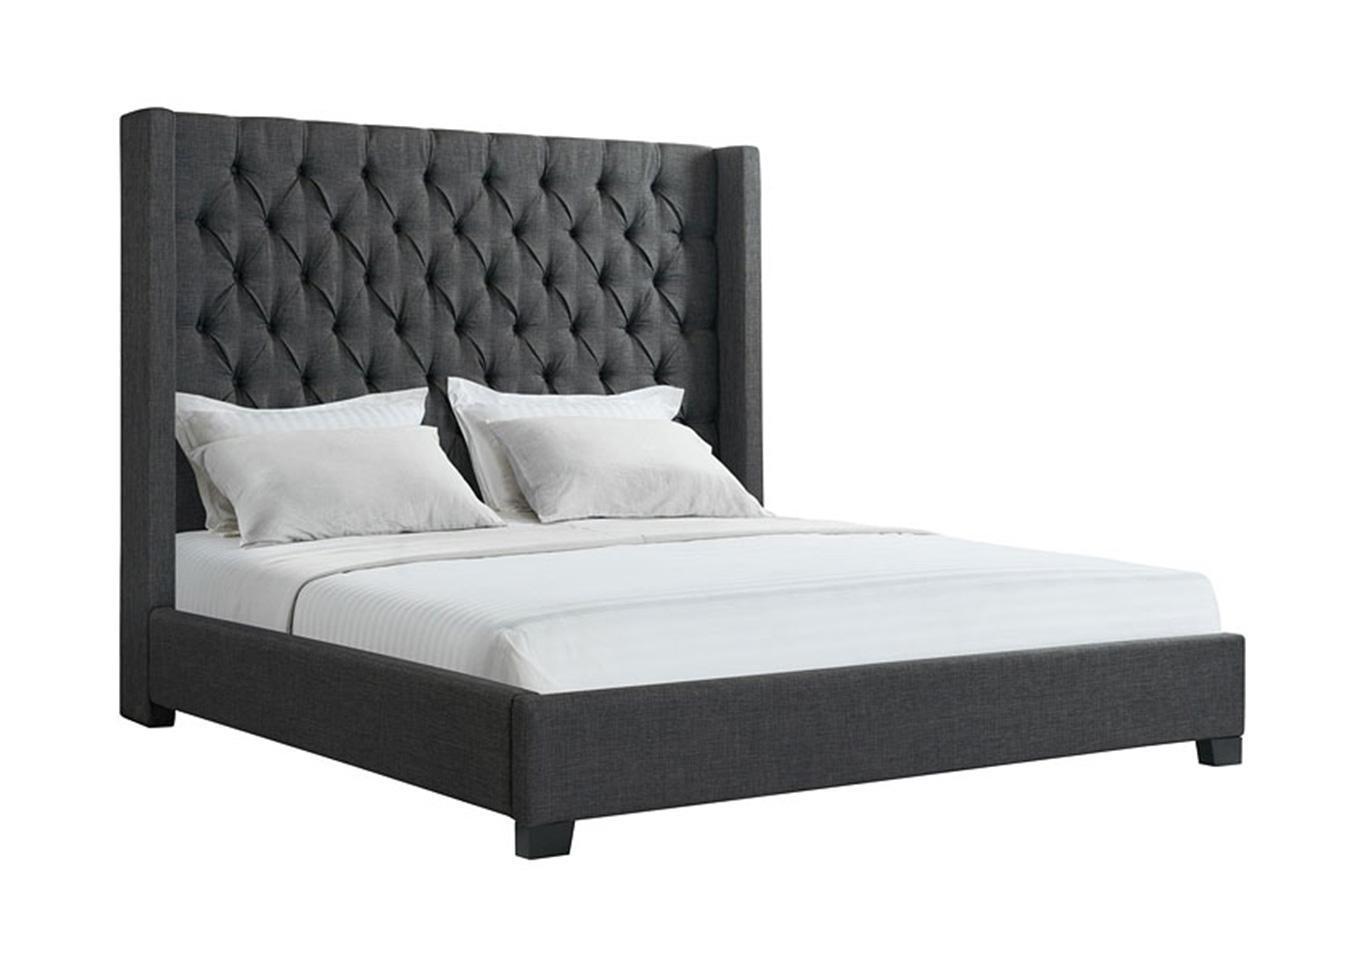 Charcoal Queen Upholstered Bed,Overstock Liquidation 2022